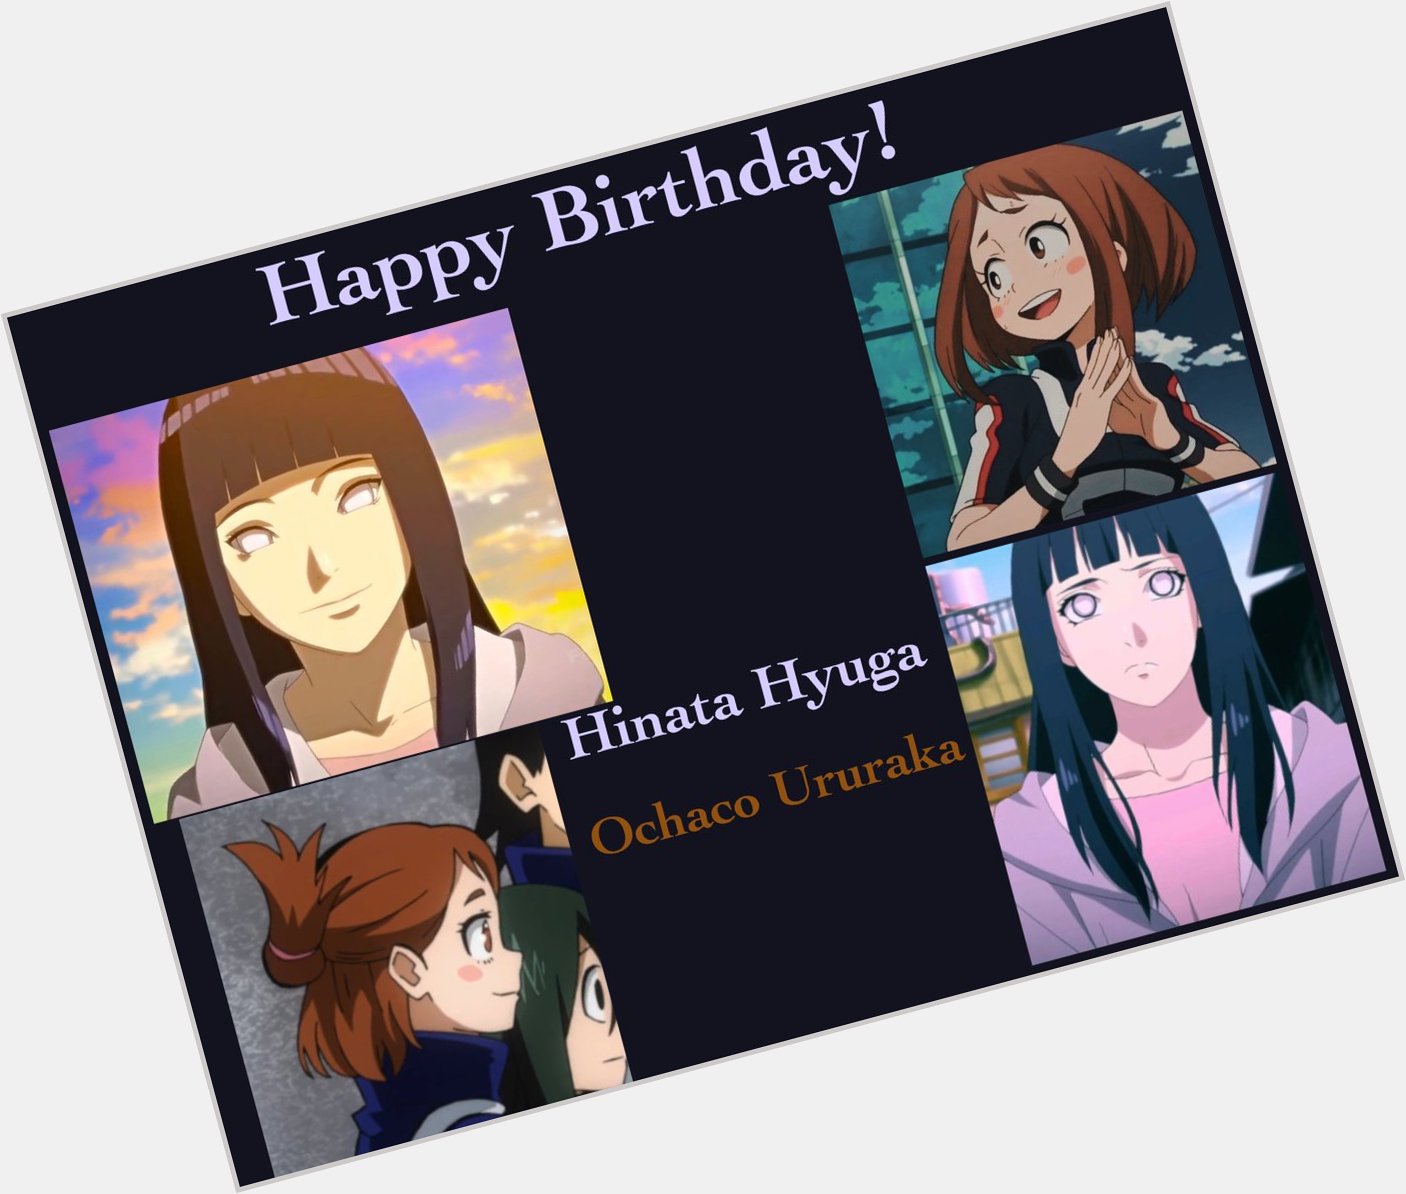 Wishing Ochaco Ururaka and Hinata Hyuga a lovely happy birthday! 